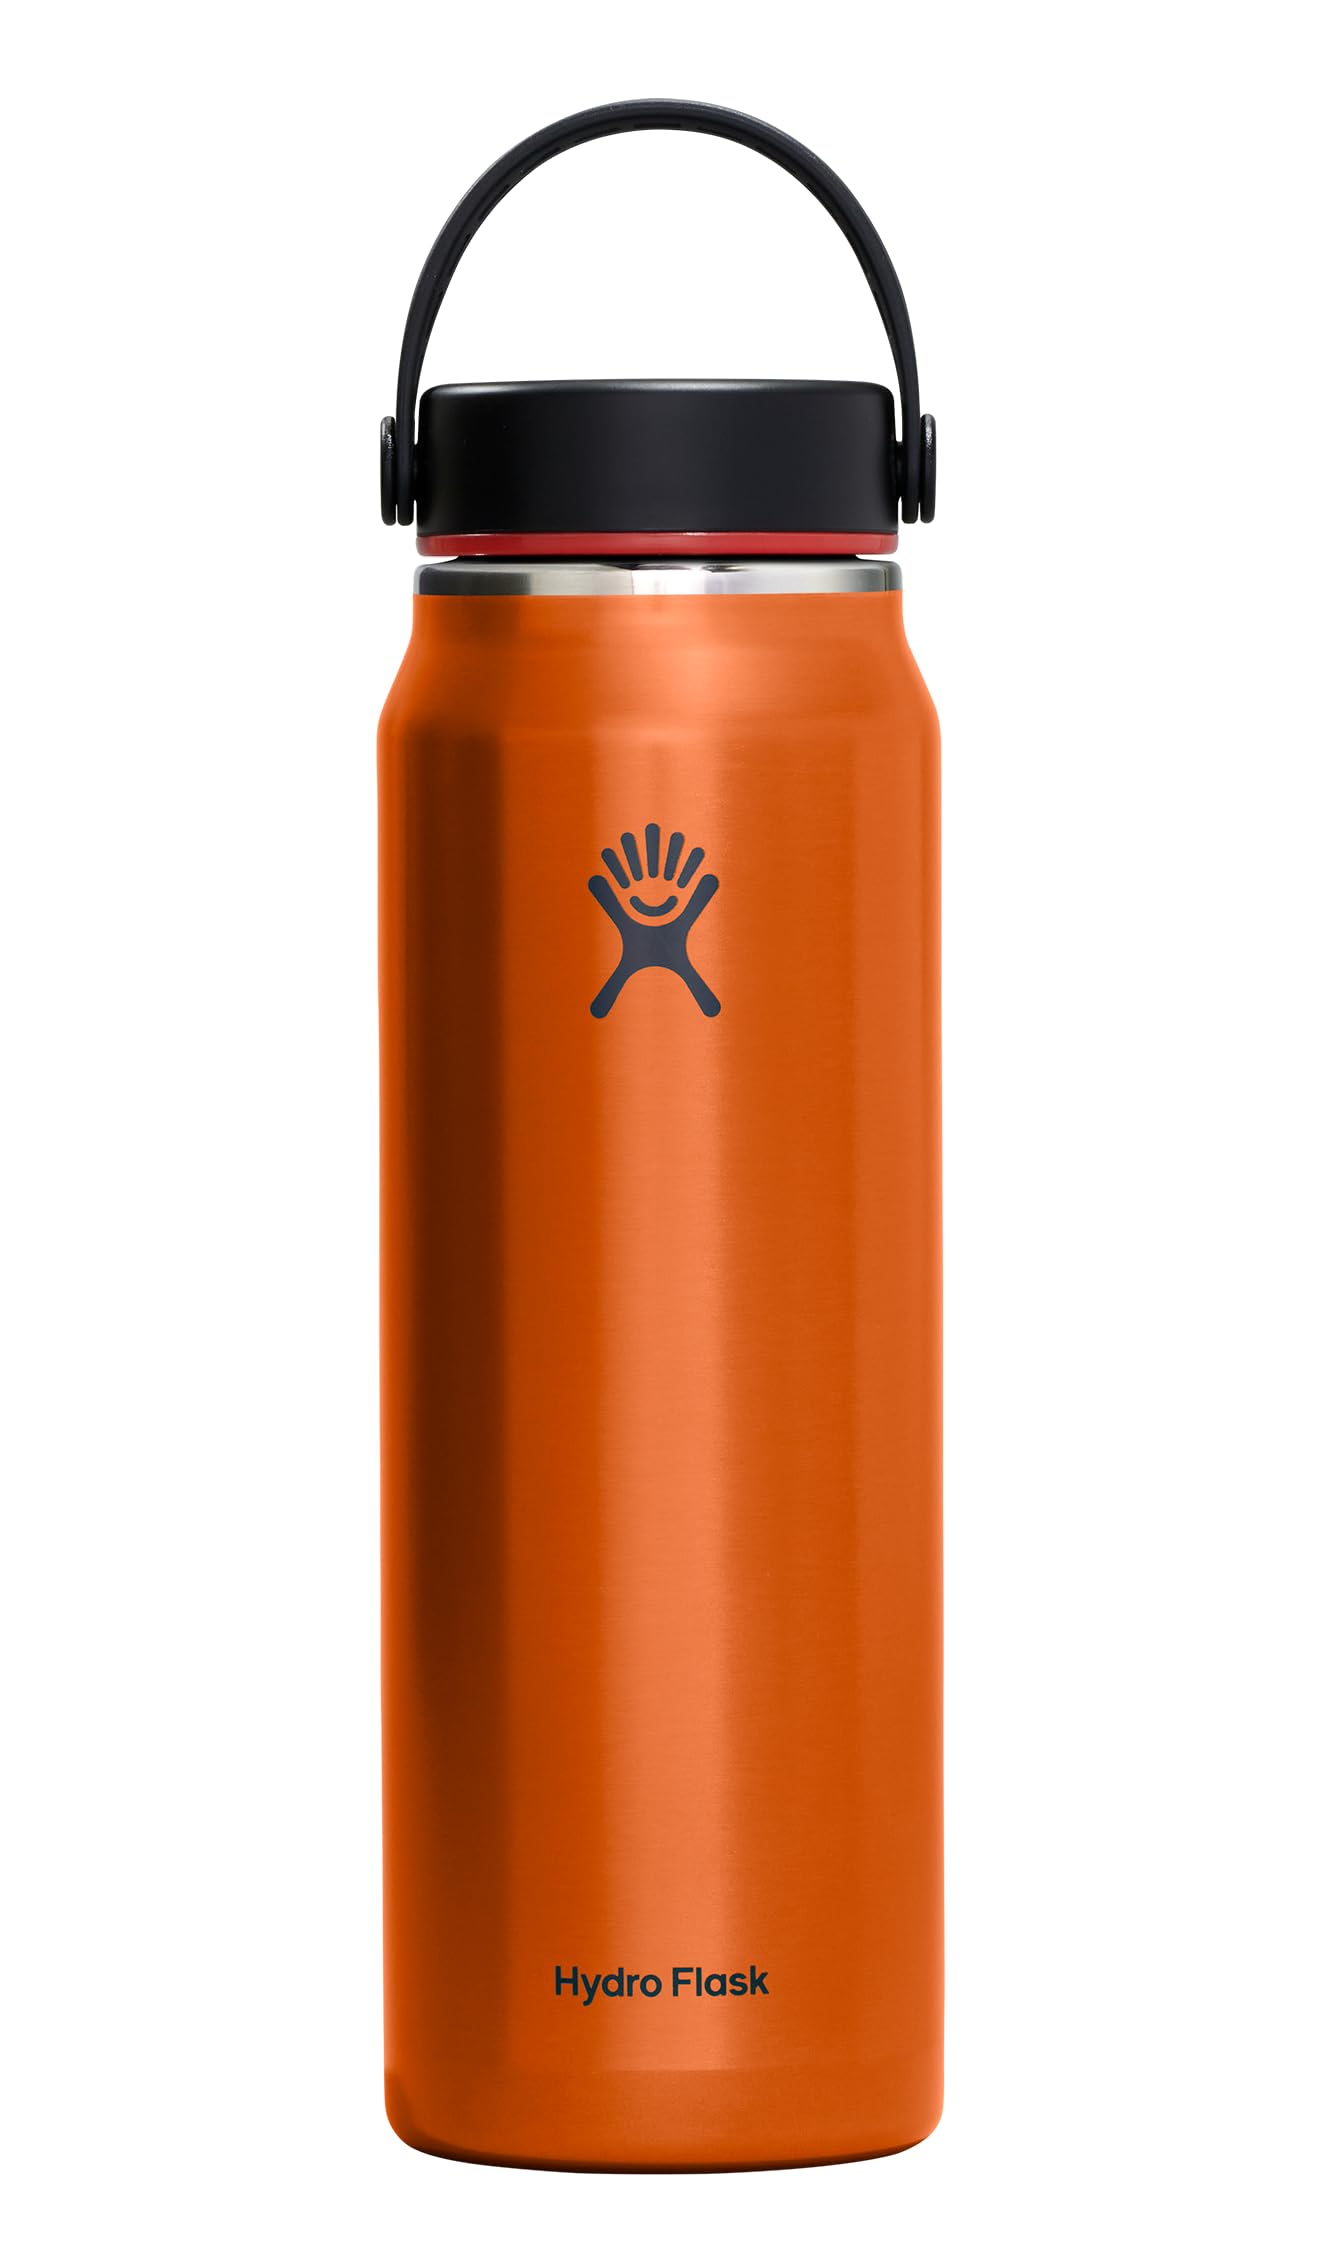 32-Oz Hydro Flask Trail Series Lightweight Water Bottle w/ Wide Flex Cap (Jasper) $29.83 Free Shipping w/ Prime